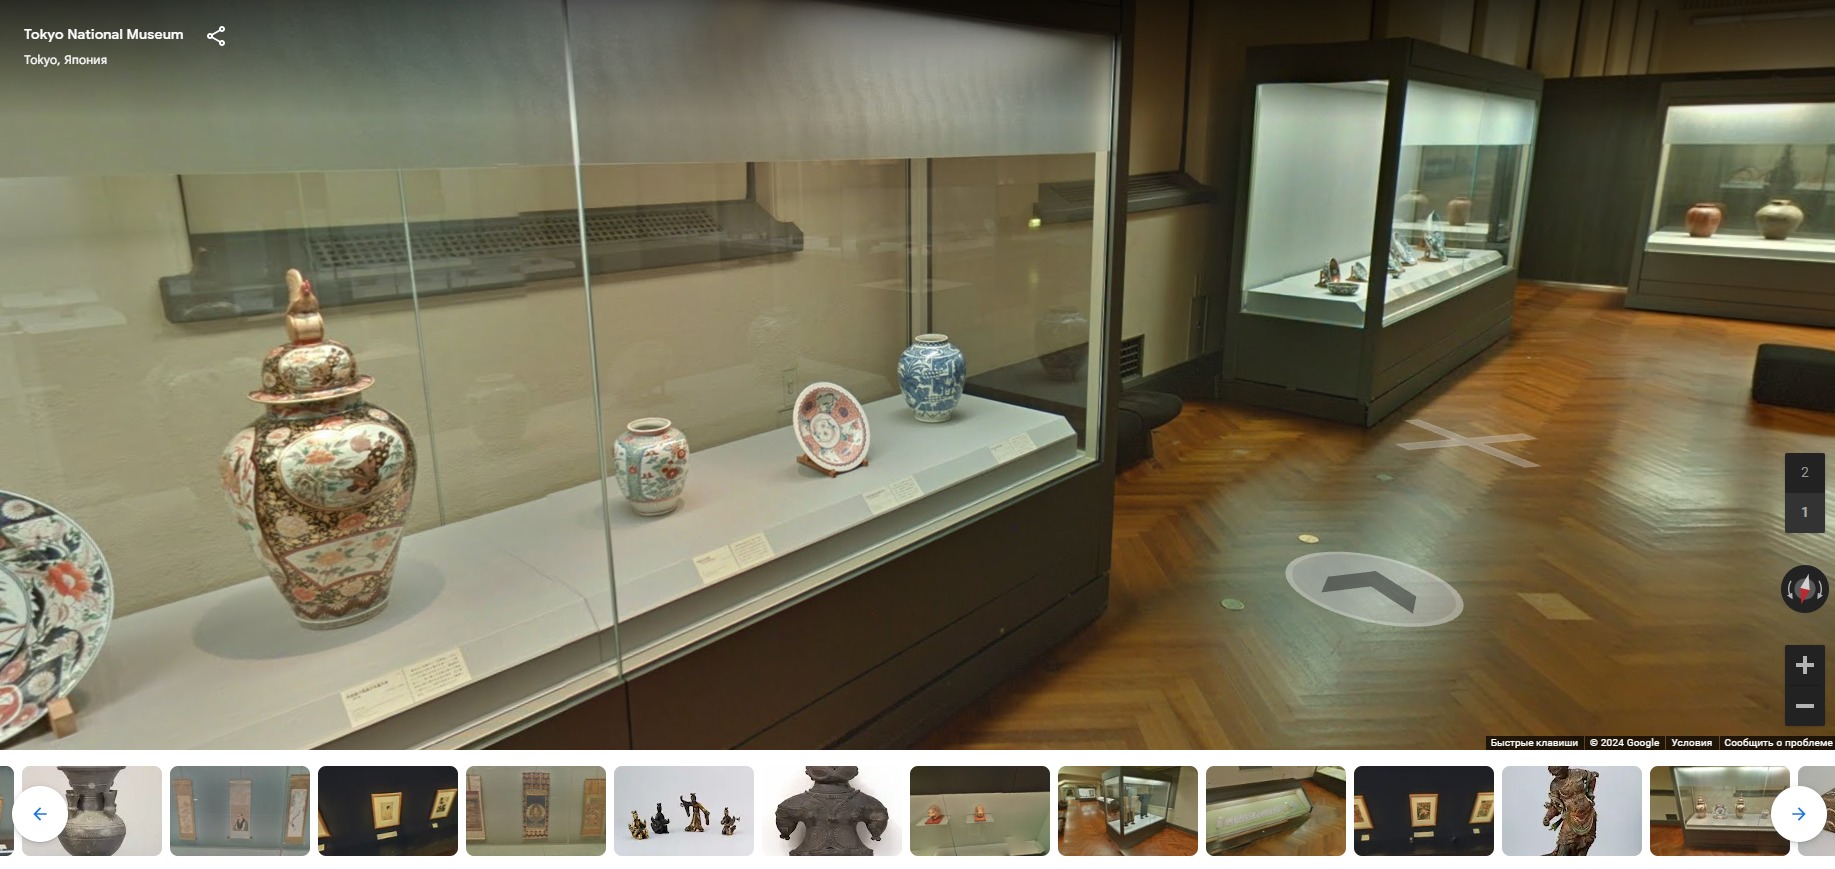 Обзор Токийского национального музея в Google Arts & Culture